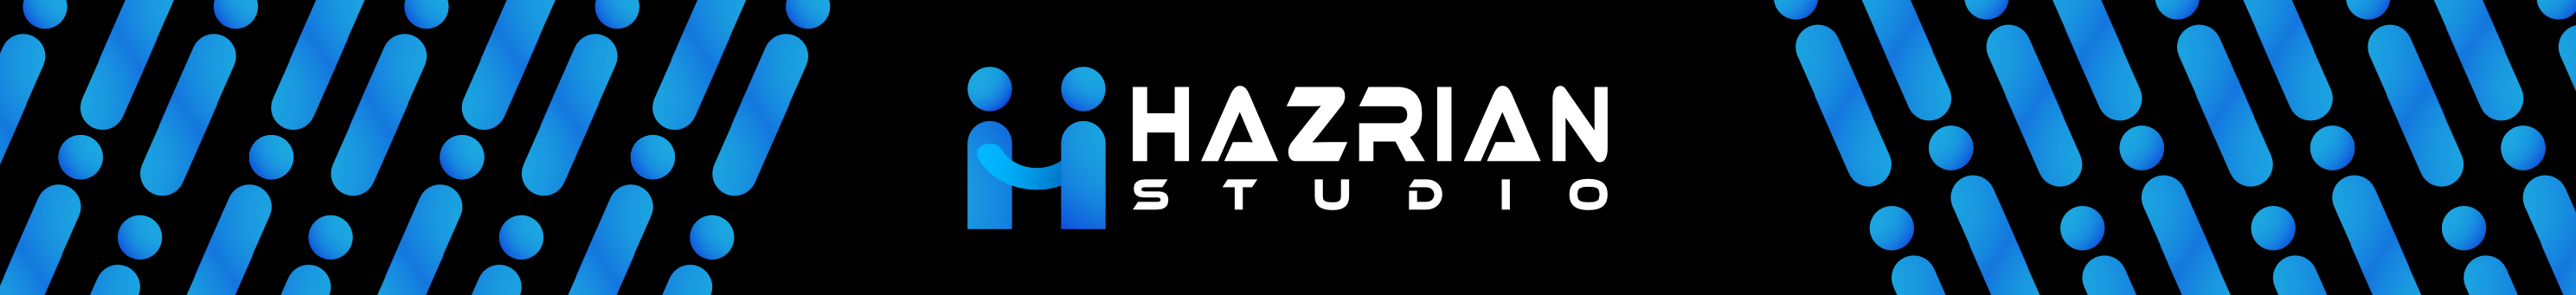 Hazrian Studio's profile banner